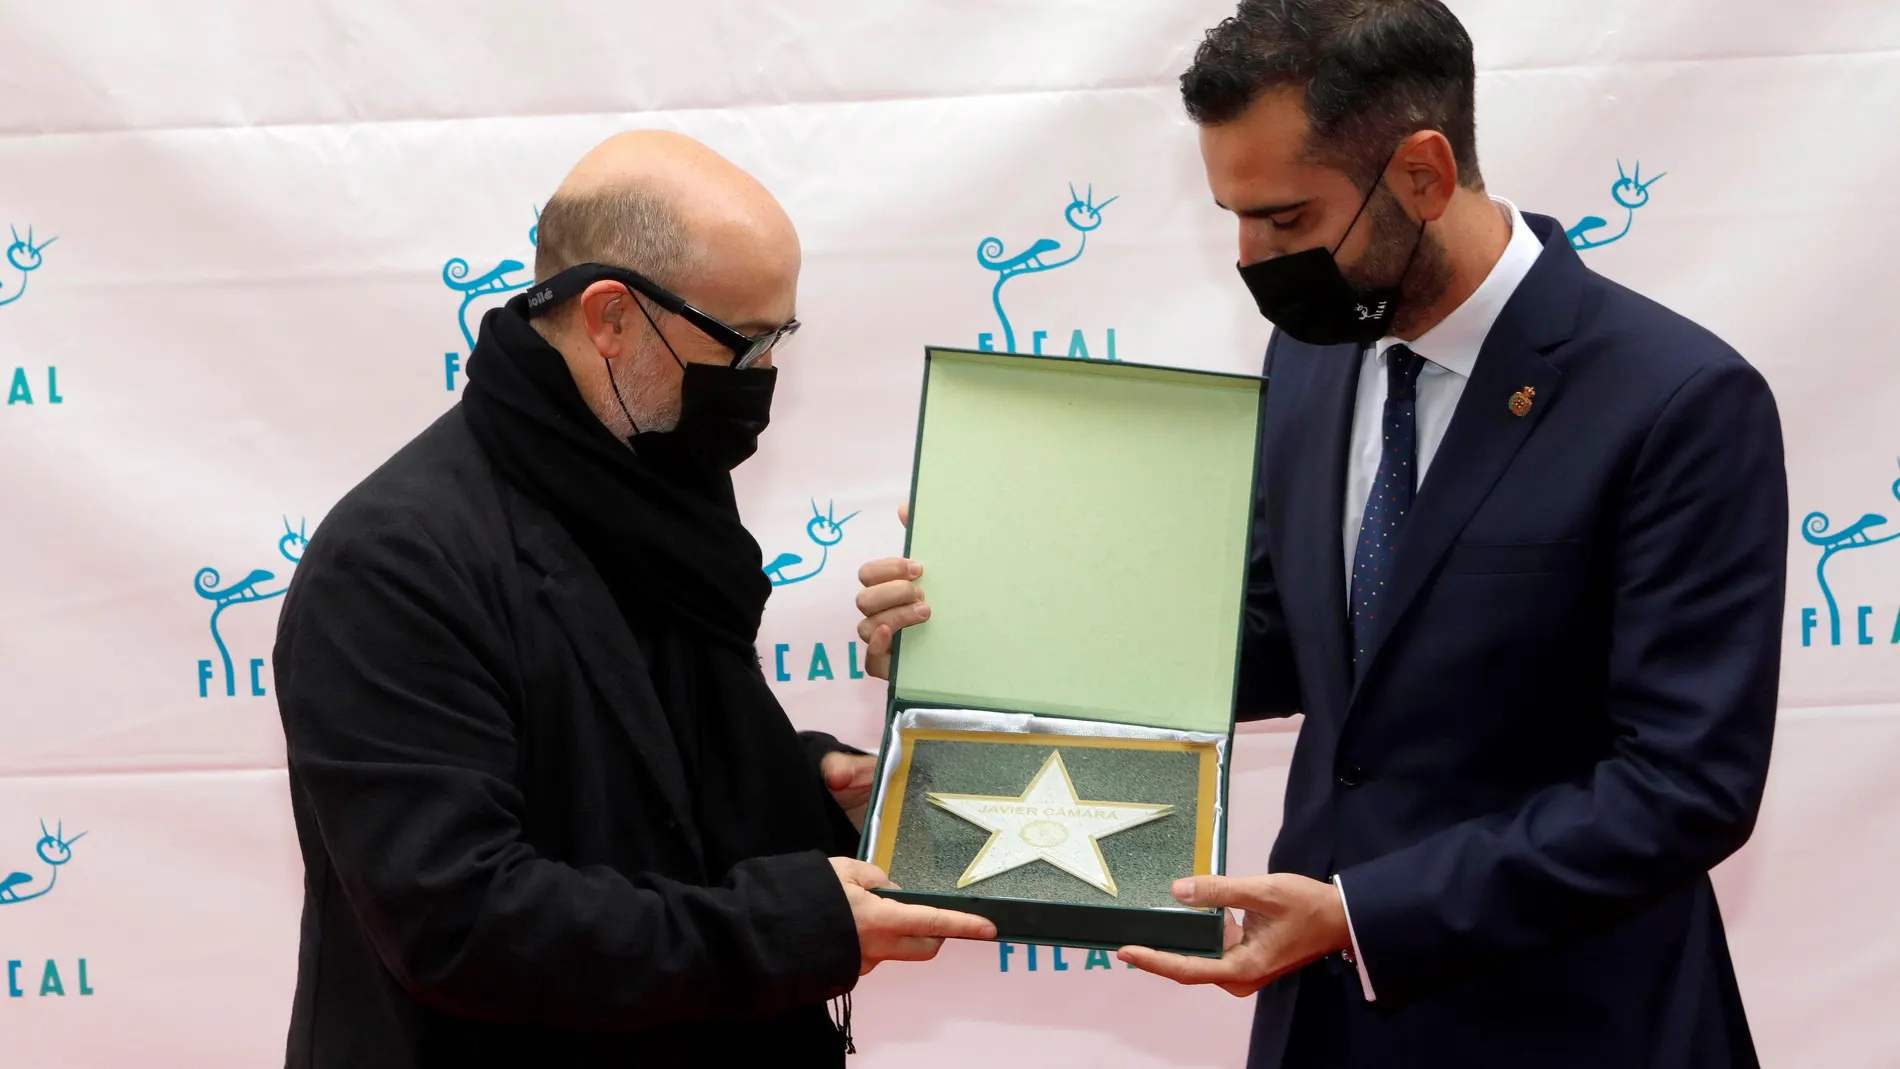 El actor Javier Cámara recibe la estrella que lleva su nombre de manos del alcalde de Almería, Ramón Fernández Pacheco en el Paseo de la Fama de Almería